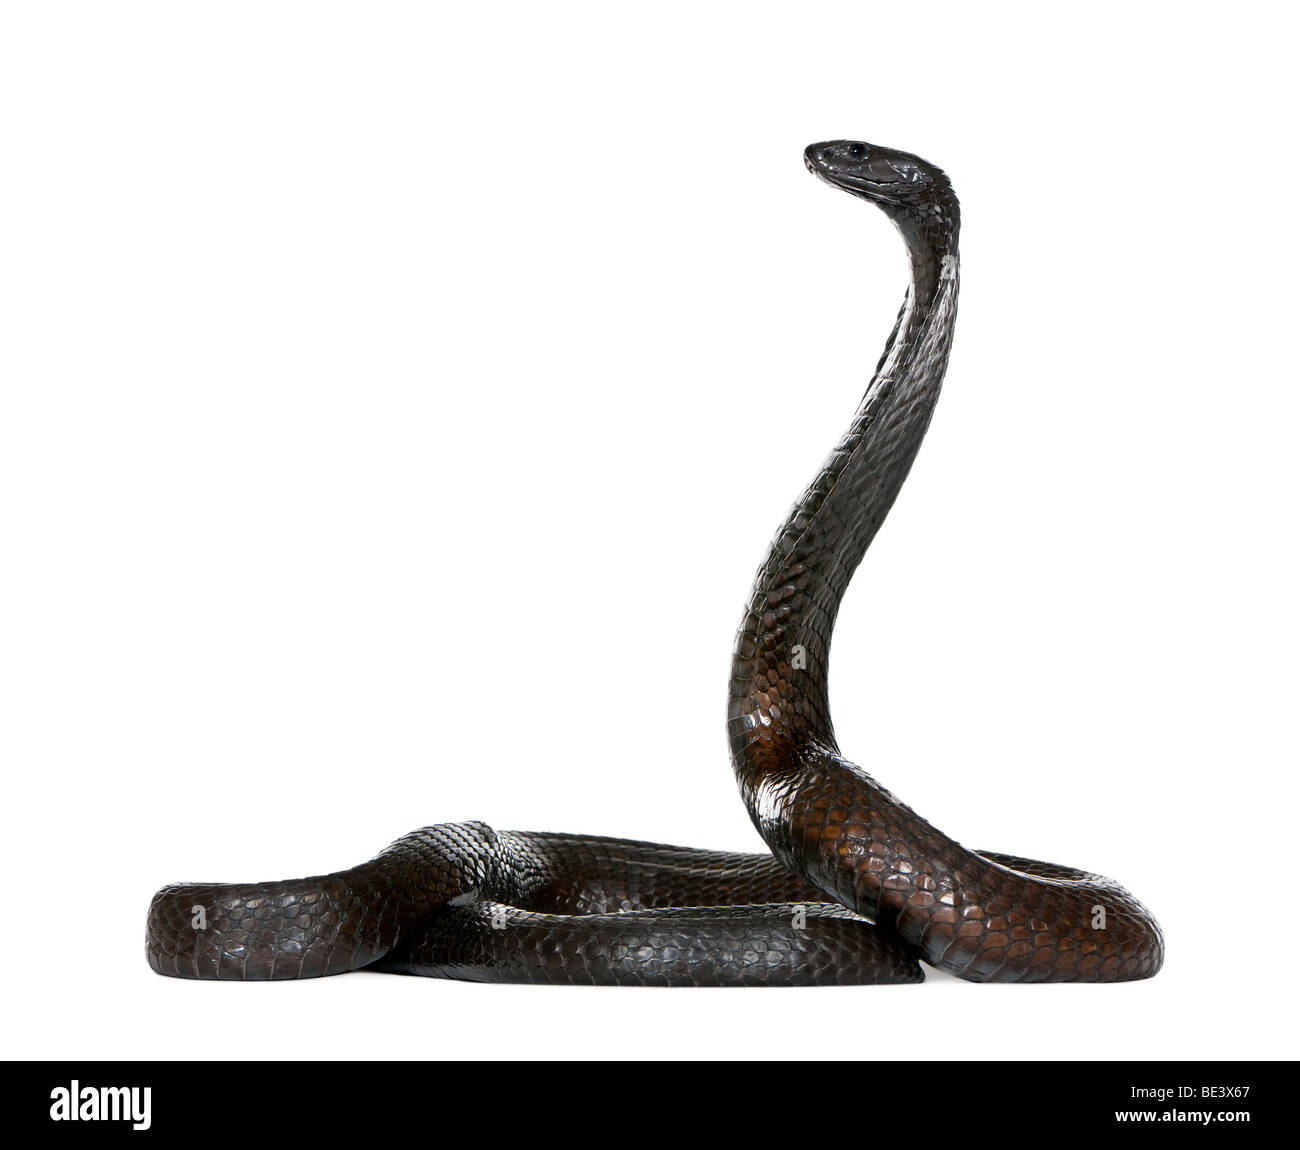 Portrait of Egyptian cobra, Naja haje, against white background, studio shot Stock Photo